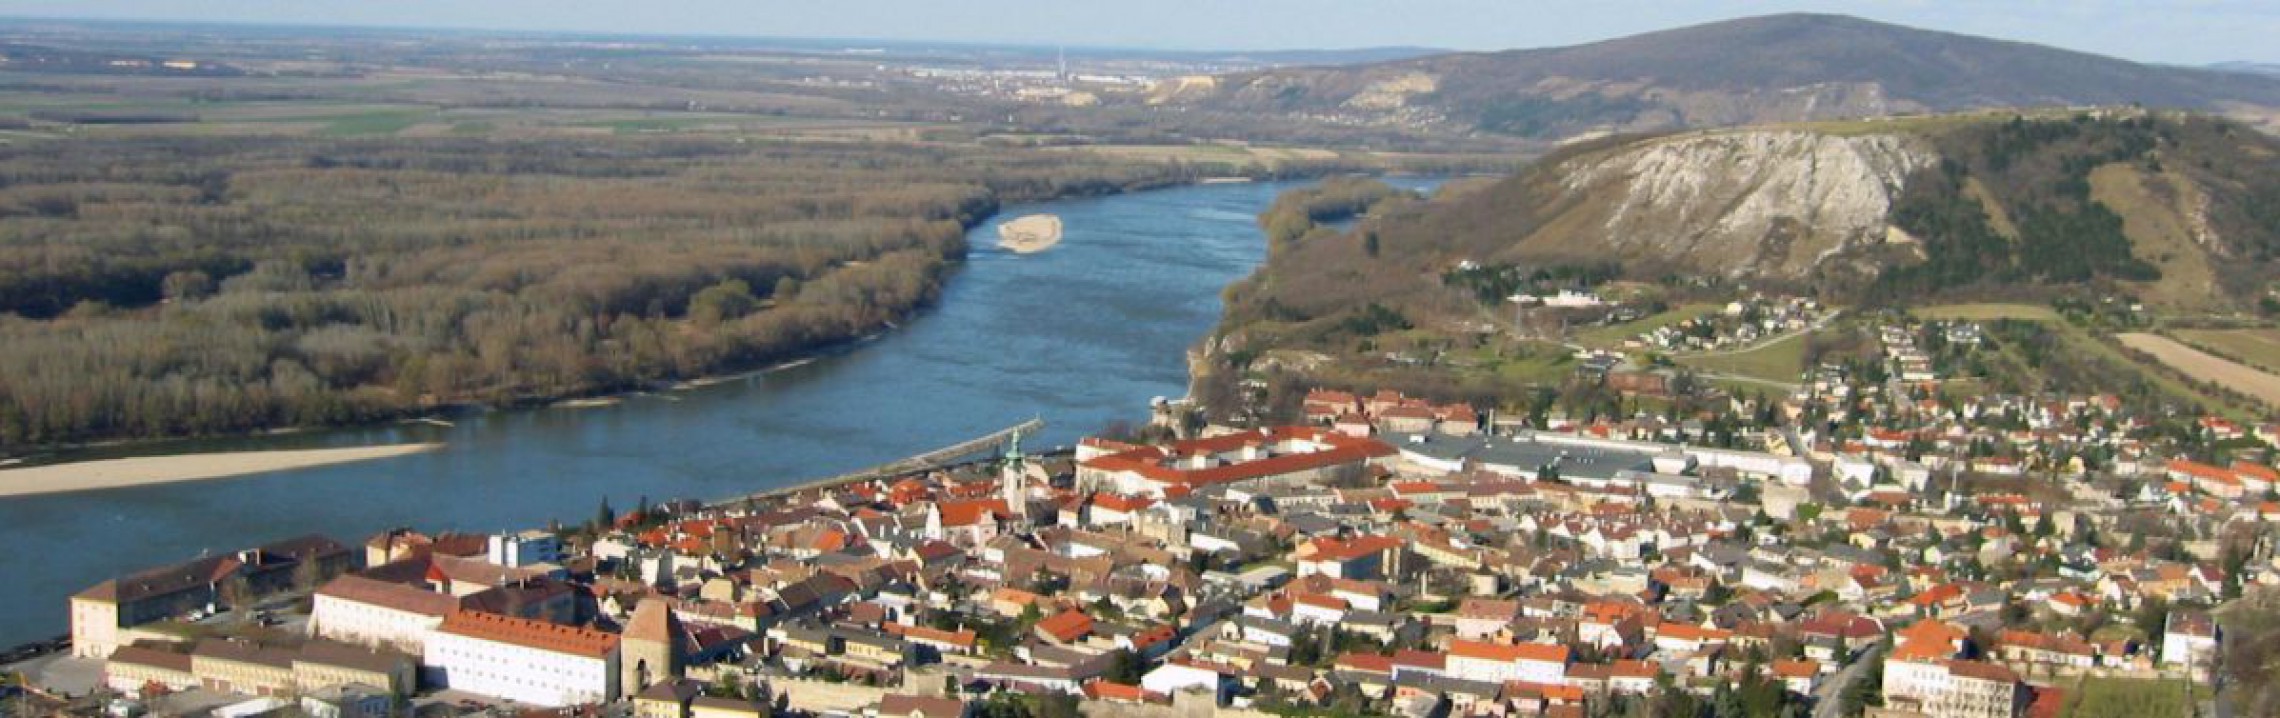 Blick auf Hainburg und Donau